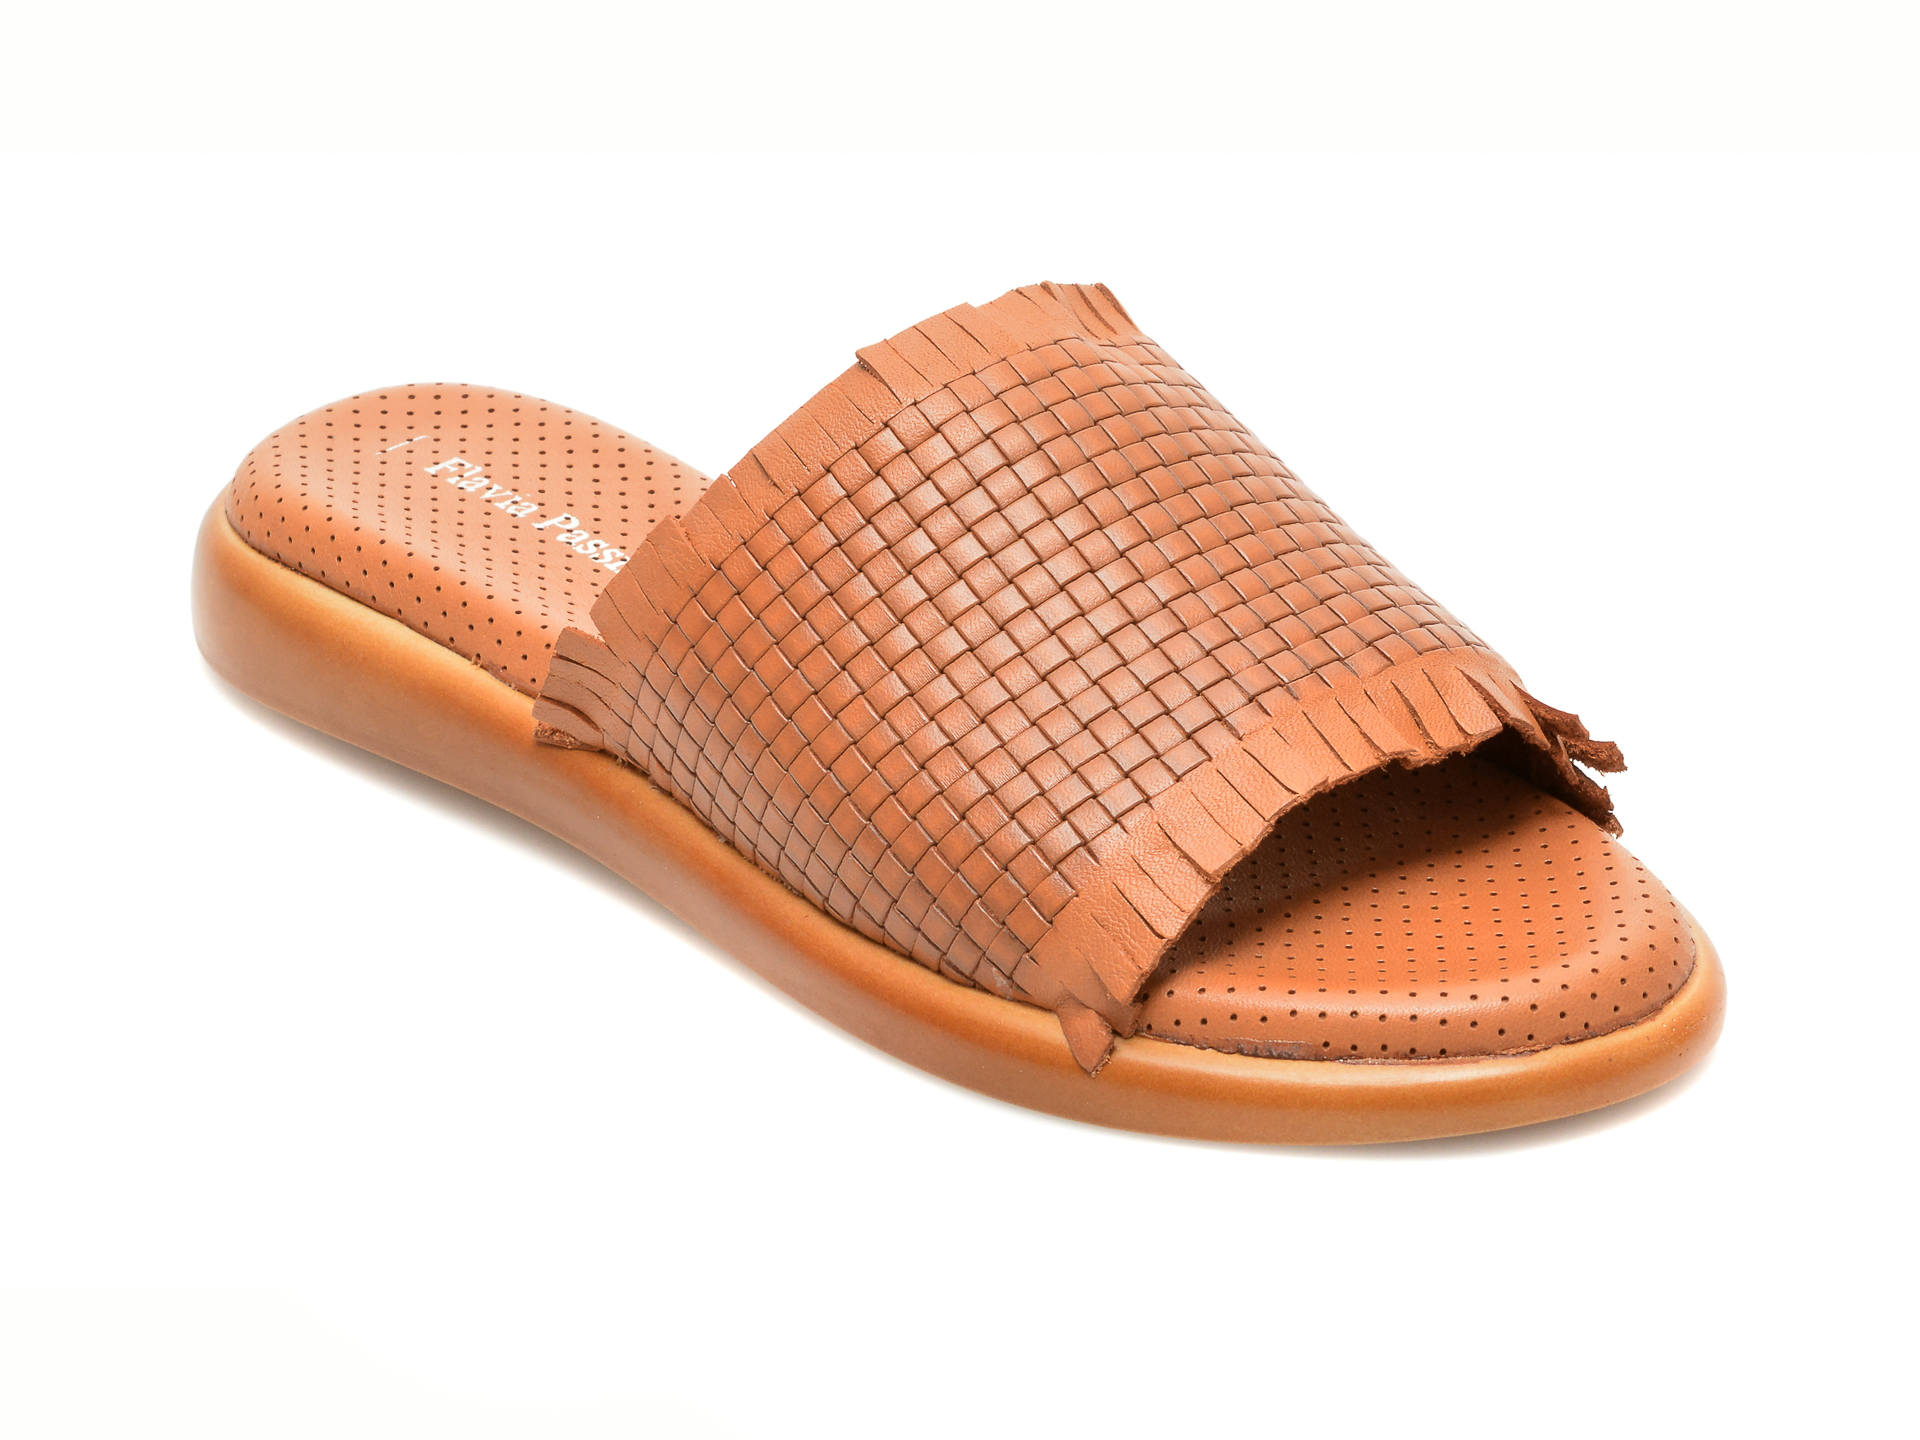 Papuci FLAVIA PASSINI maro, 22060, din piele naturala Flavia Passini imagine reduceri